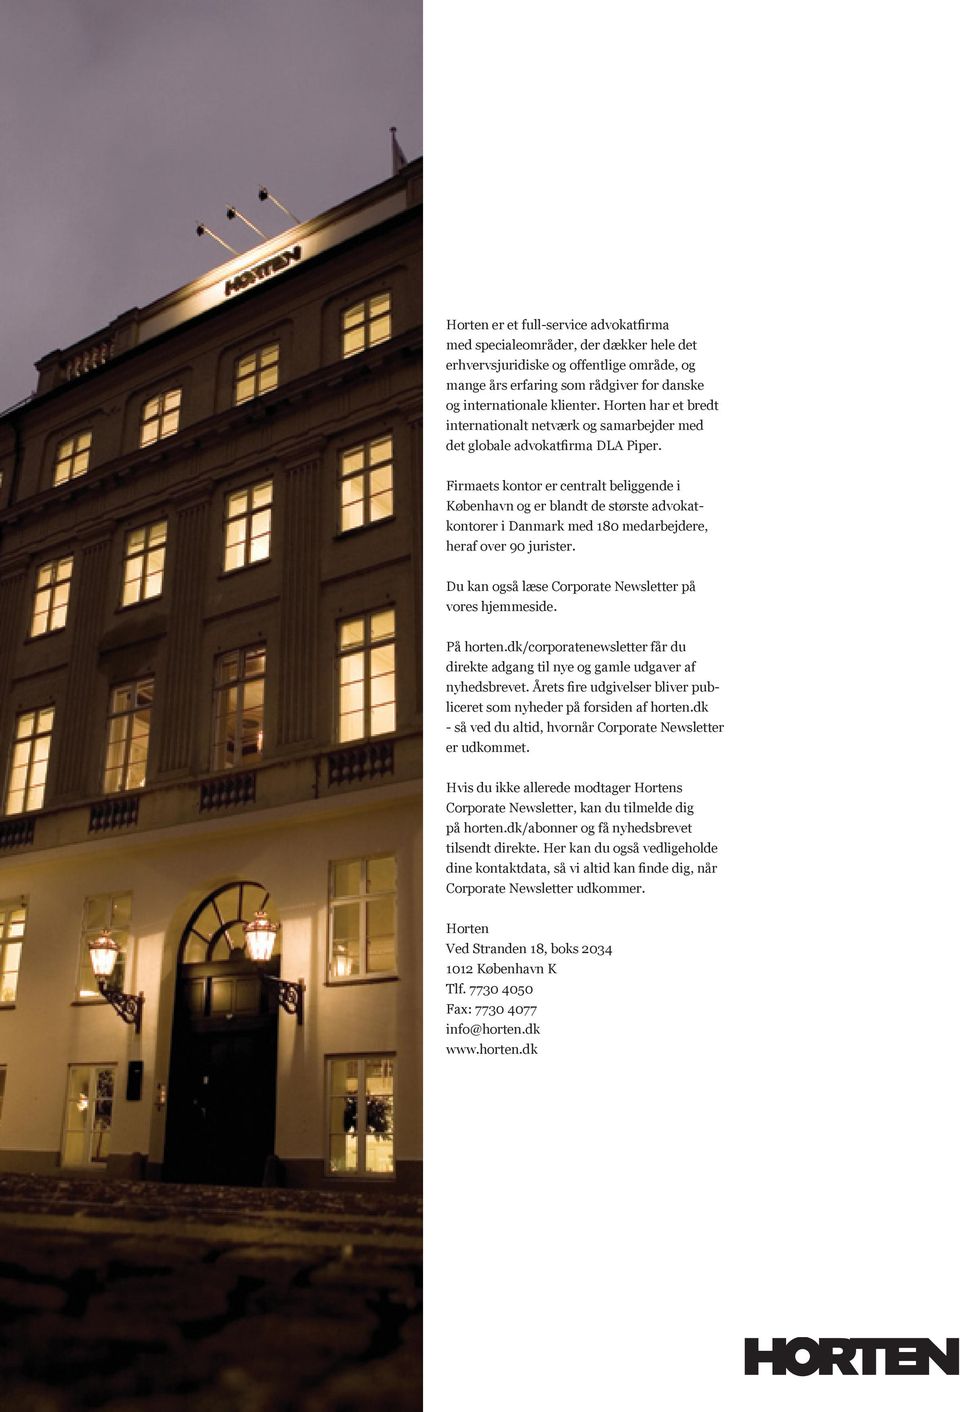 Firmaets kontor er centralt beliggende i København og er blandt de største advokatkontorer i Danmark med 180 medarbejdere, heraf over 90 jurister.